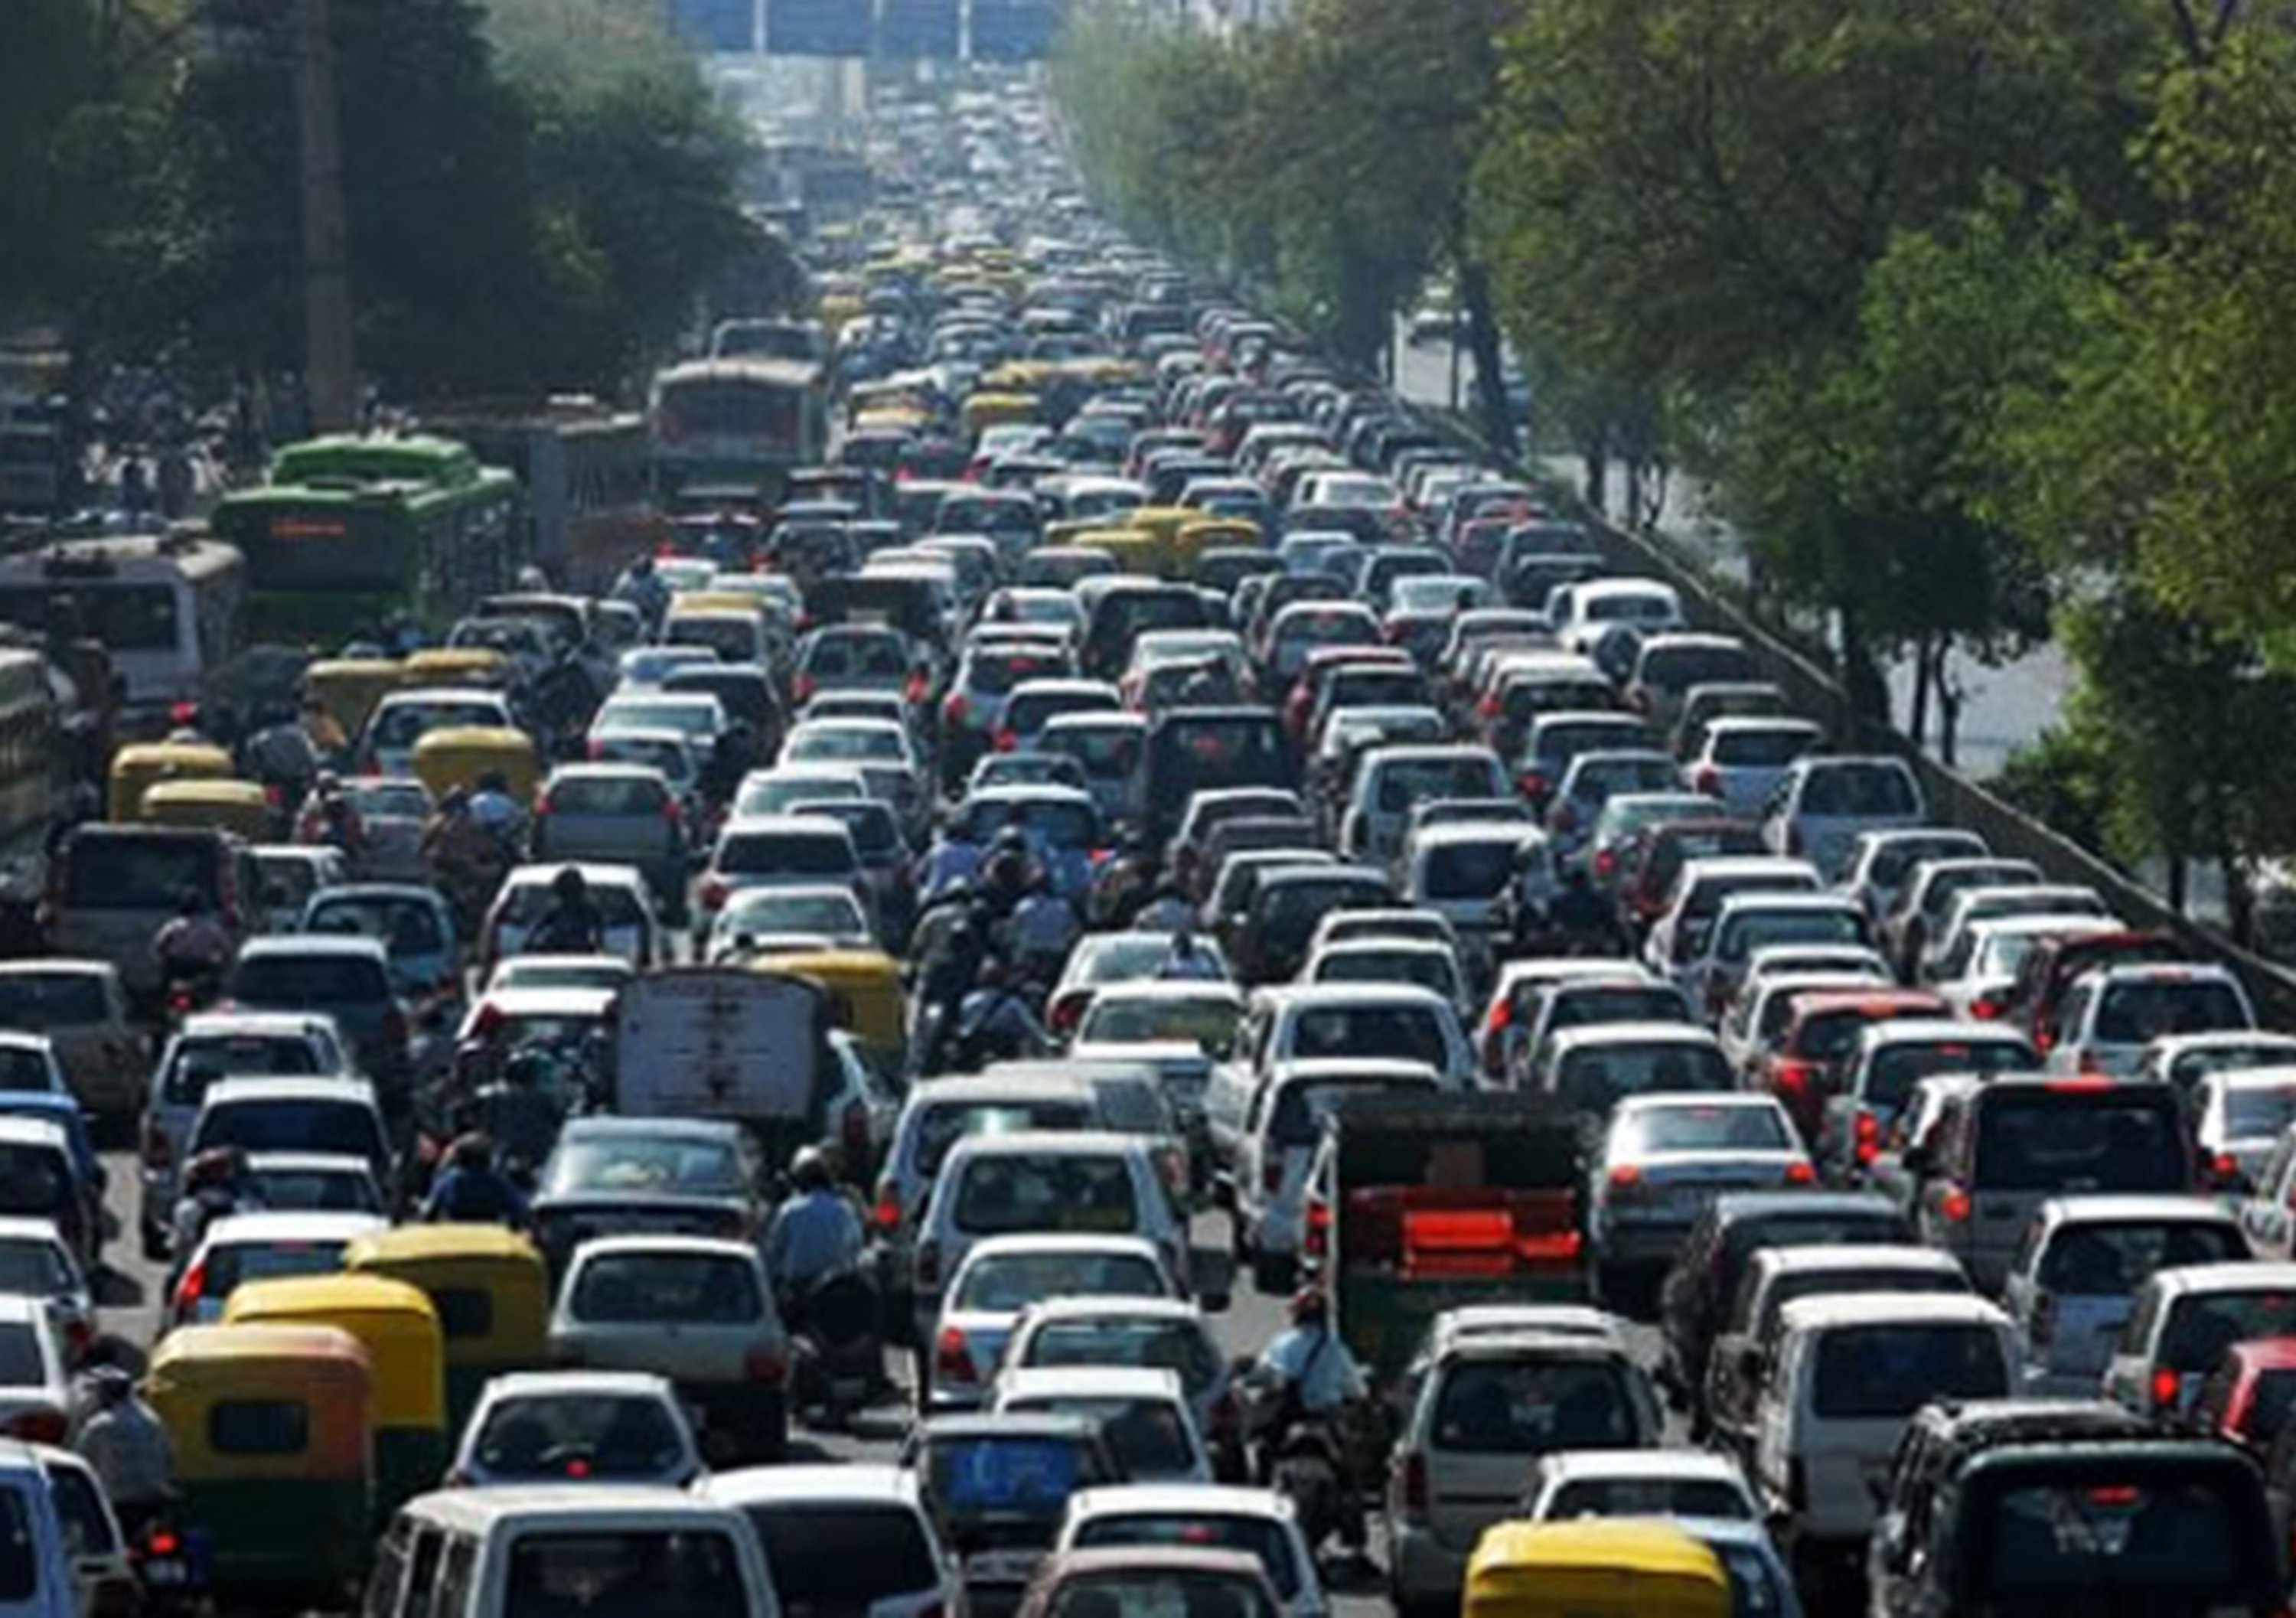 69esima conferenza del traffico: in Italia troppe auto vecchie